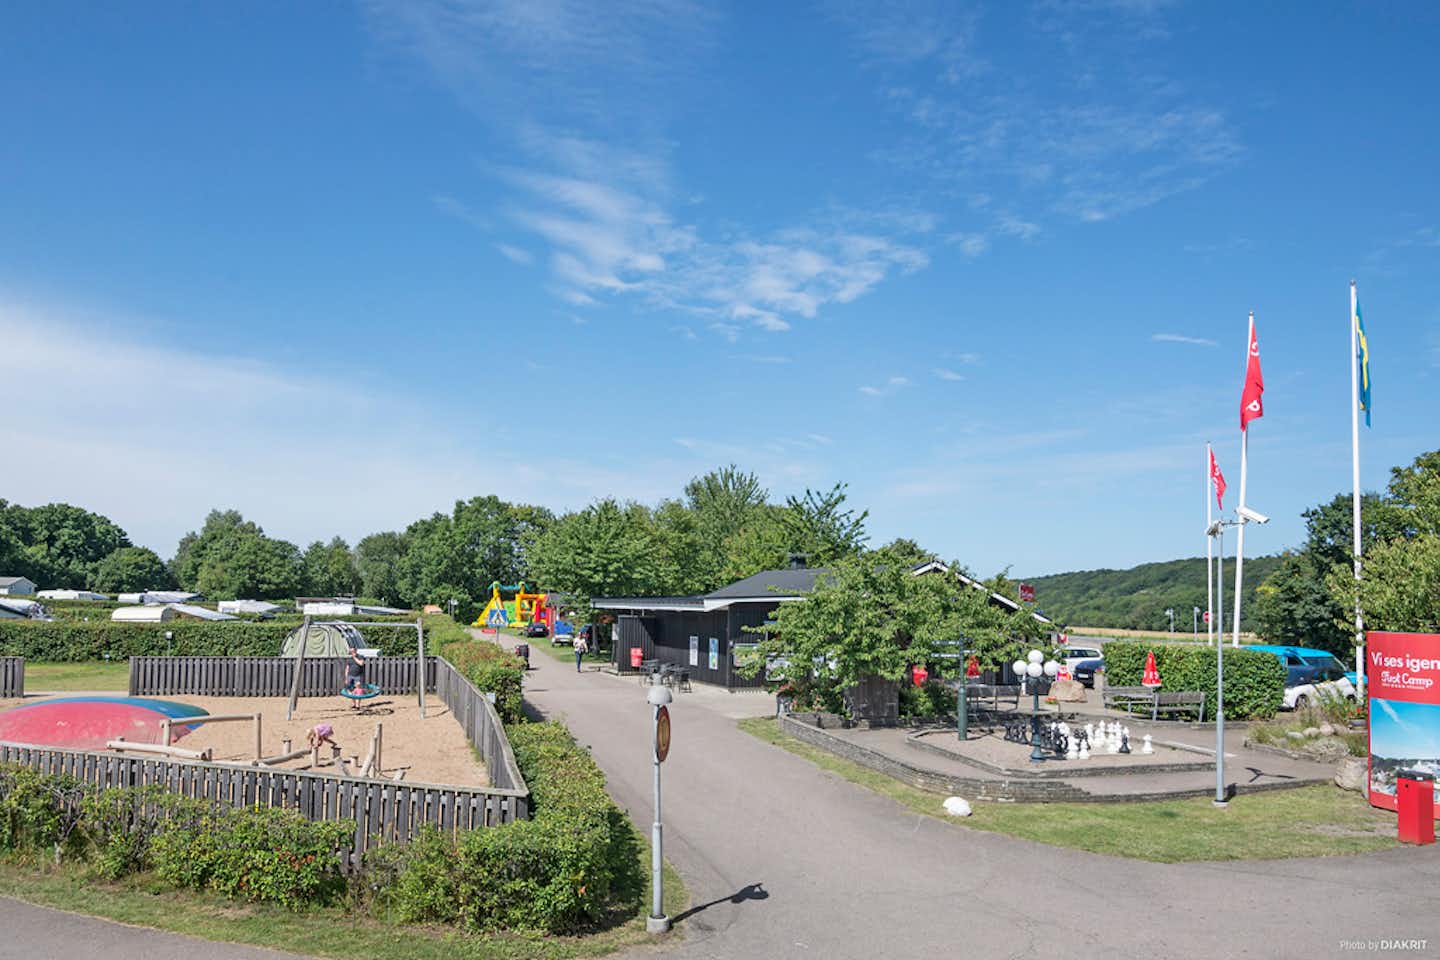 First Camp Mölle - Spielplätze für Kinder auf dem Gelände vom Campingpaltz